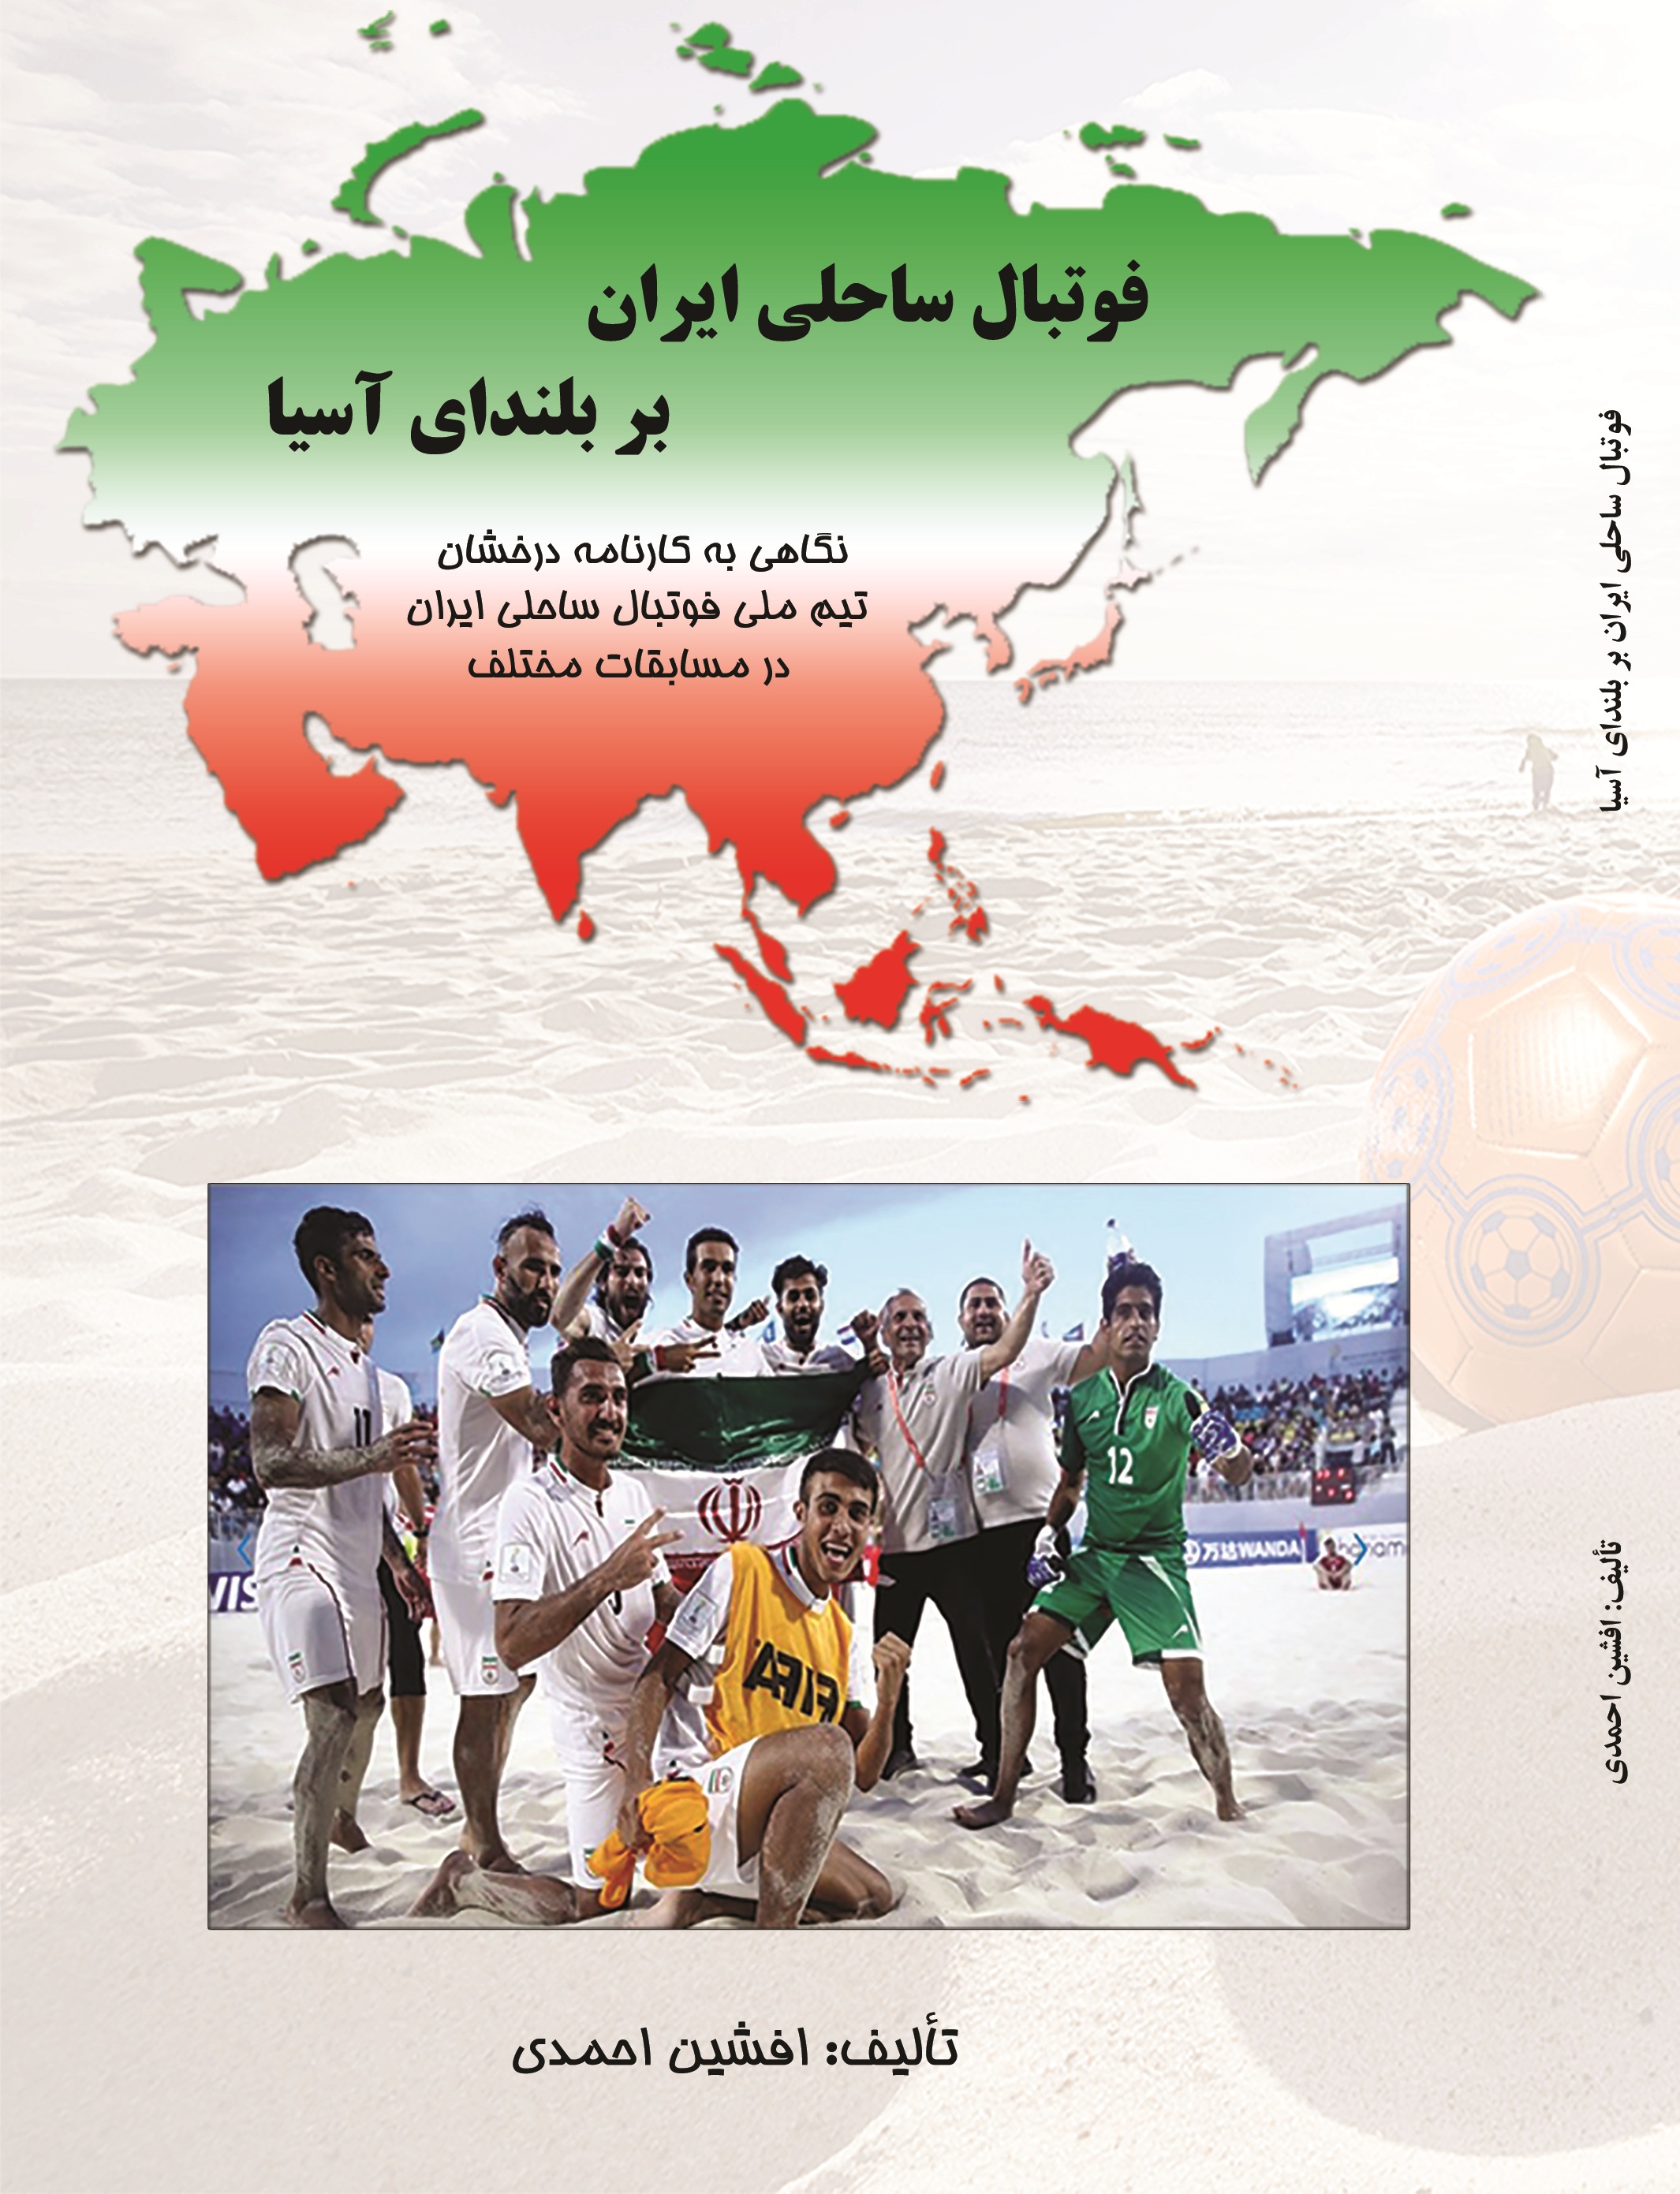 فوتبال ساحلی ايران بر بلندای آسیا : نگاهی به کارنامه درخشان تیم ملی فوتبال ساحلی ايران در مسابقات مختلف